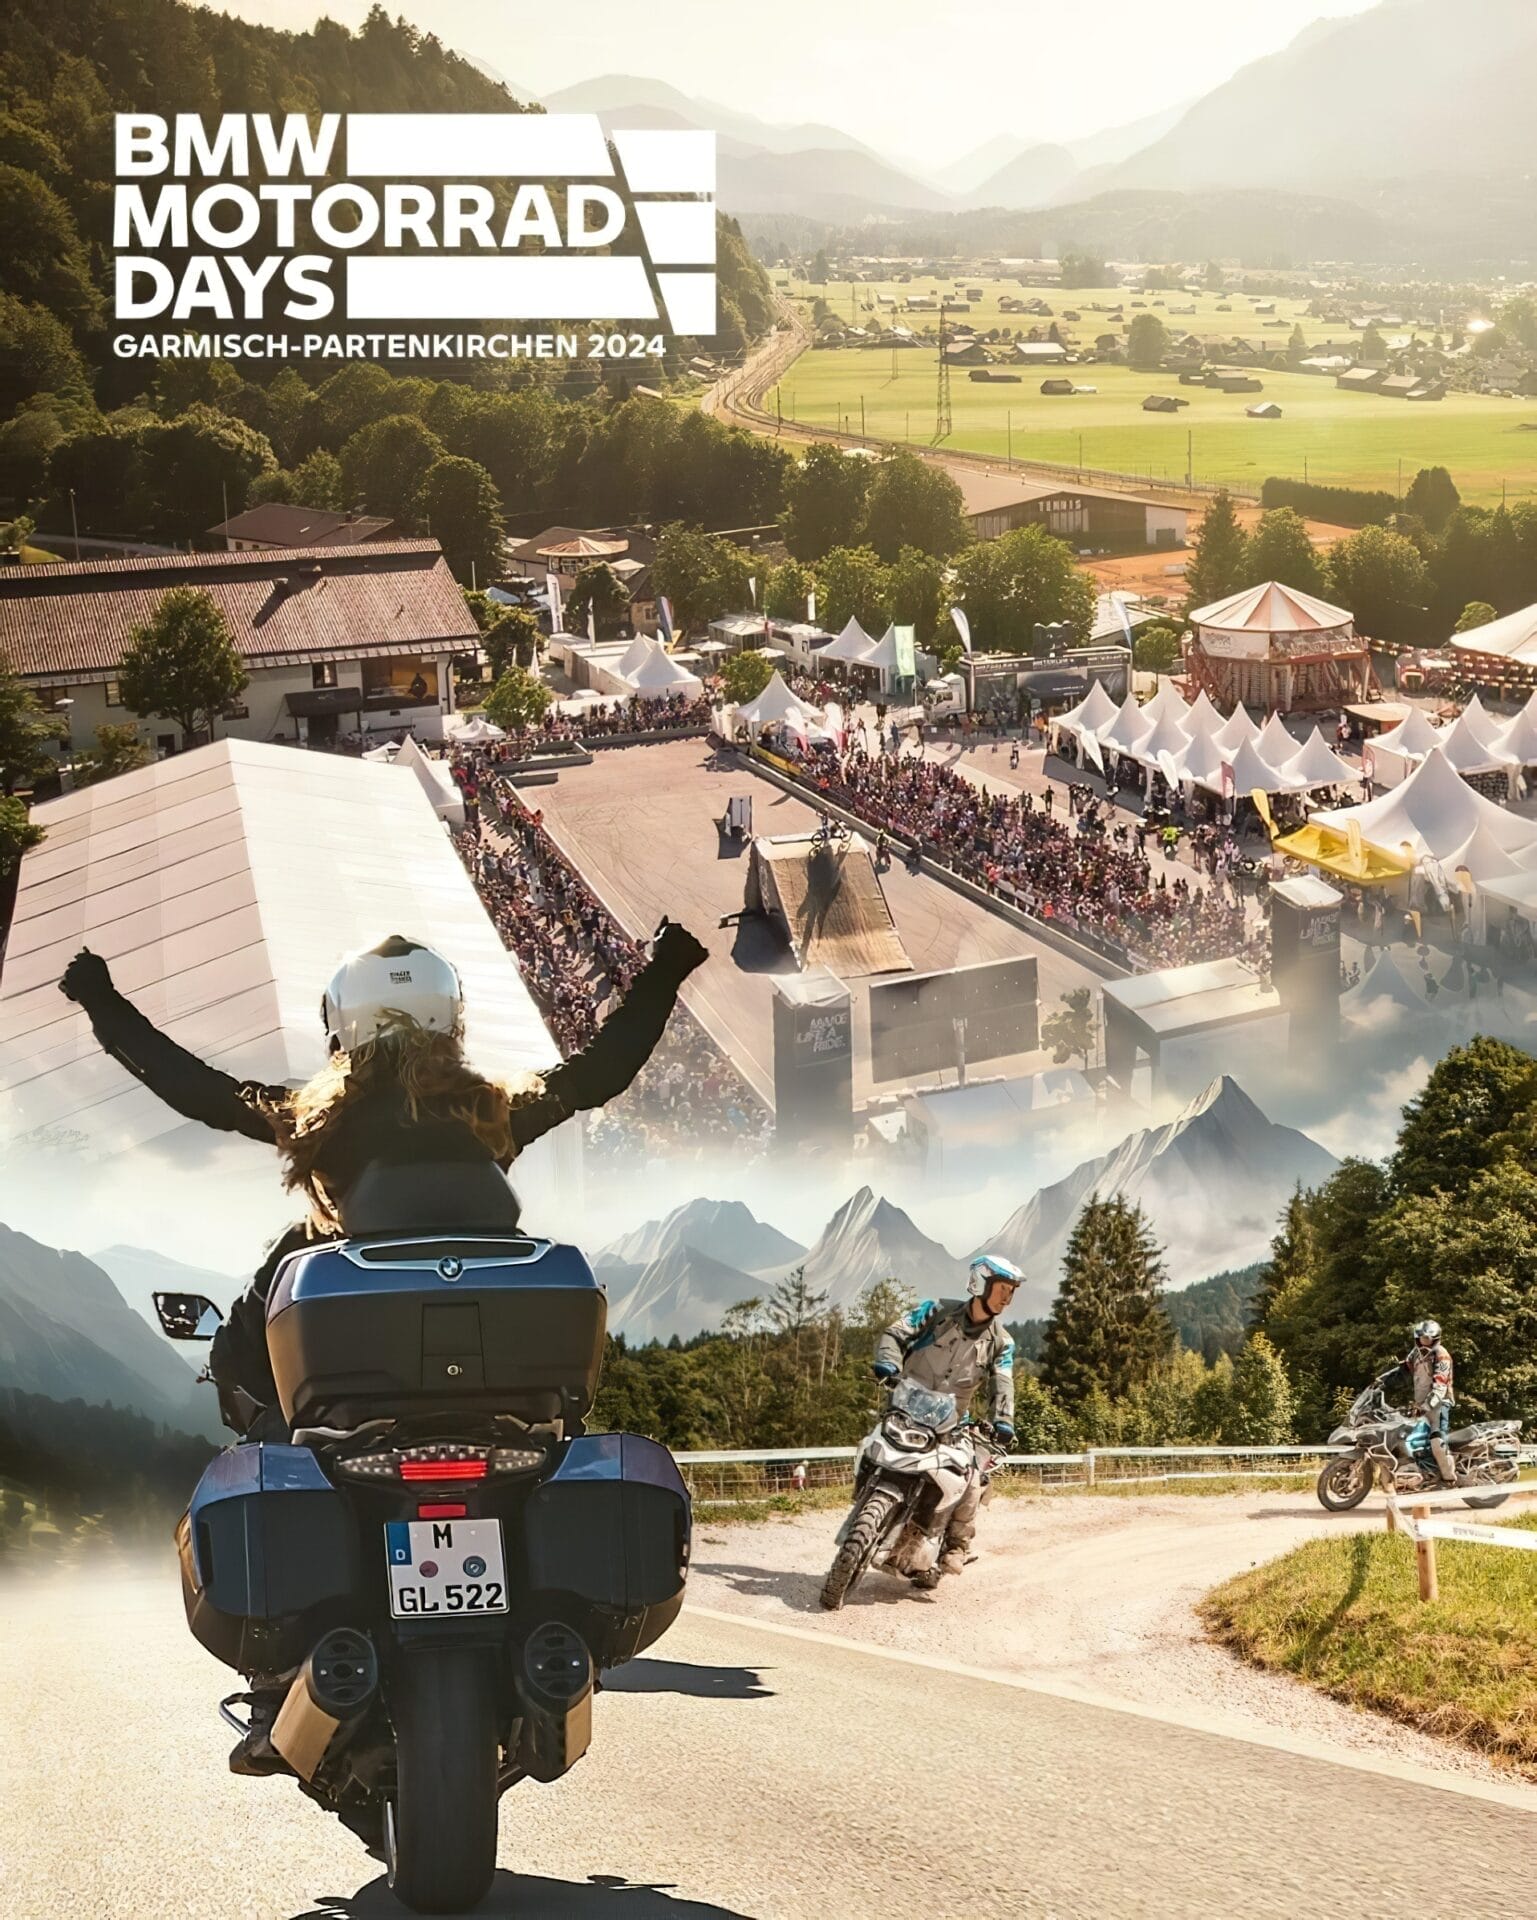 BMW Motorrad Days 2024: Return to Garmisch-Partenkirchen